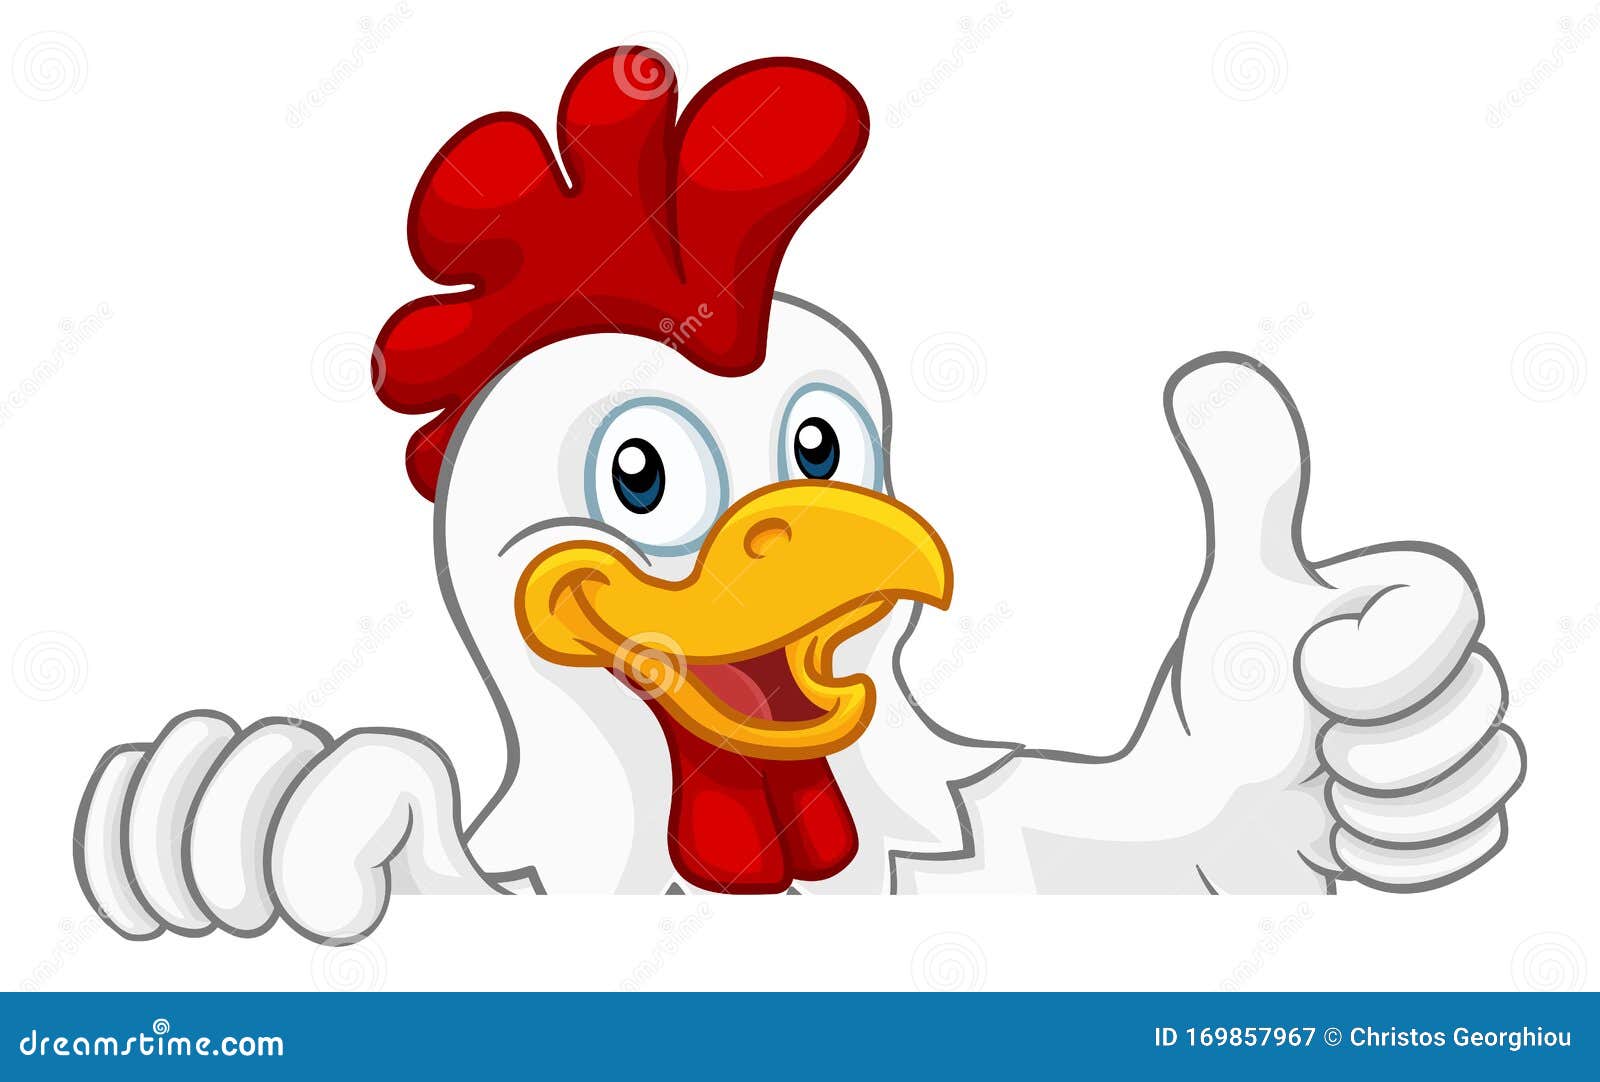 Chicken Rooster Cockerel Bird Cartoon Character Stock Vector - Illustration  of clip, head: 169857967